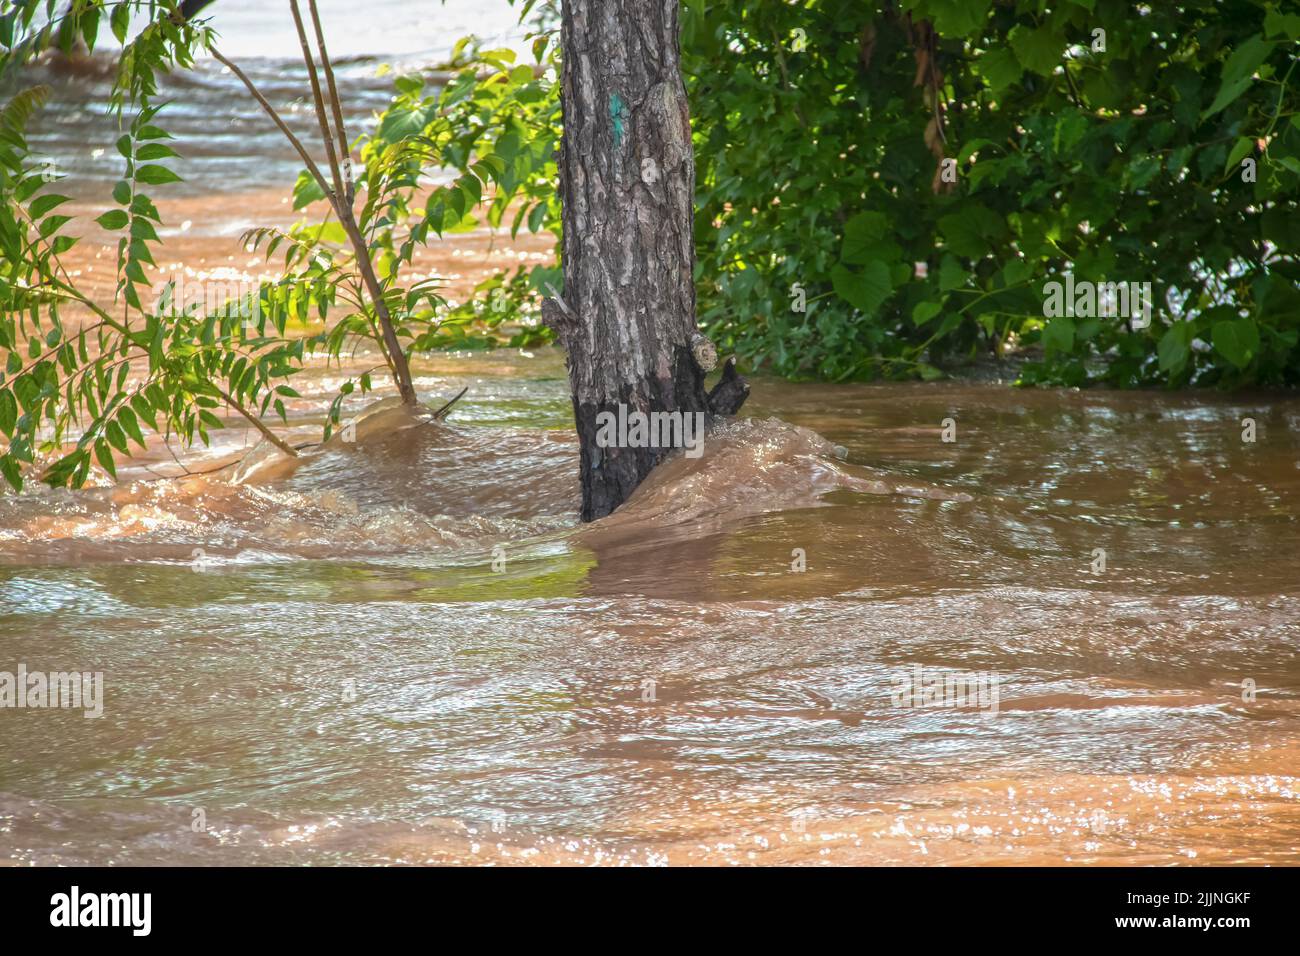 L'eau sale tourbillonne autour d'un arbre partiellement immergé dans une rivière inondée - gros plan et attention sélective Banque D'Images